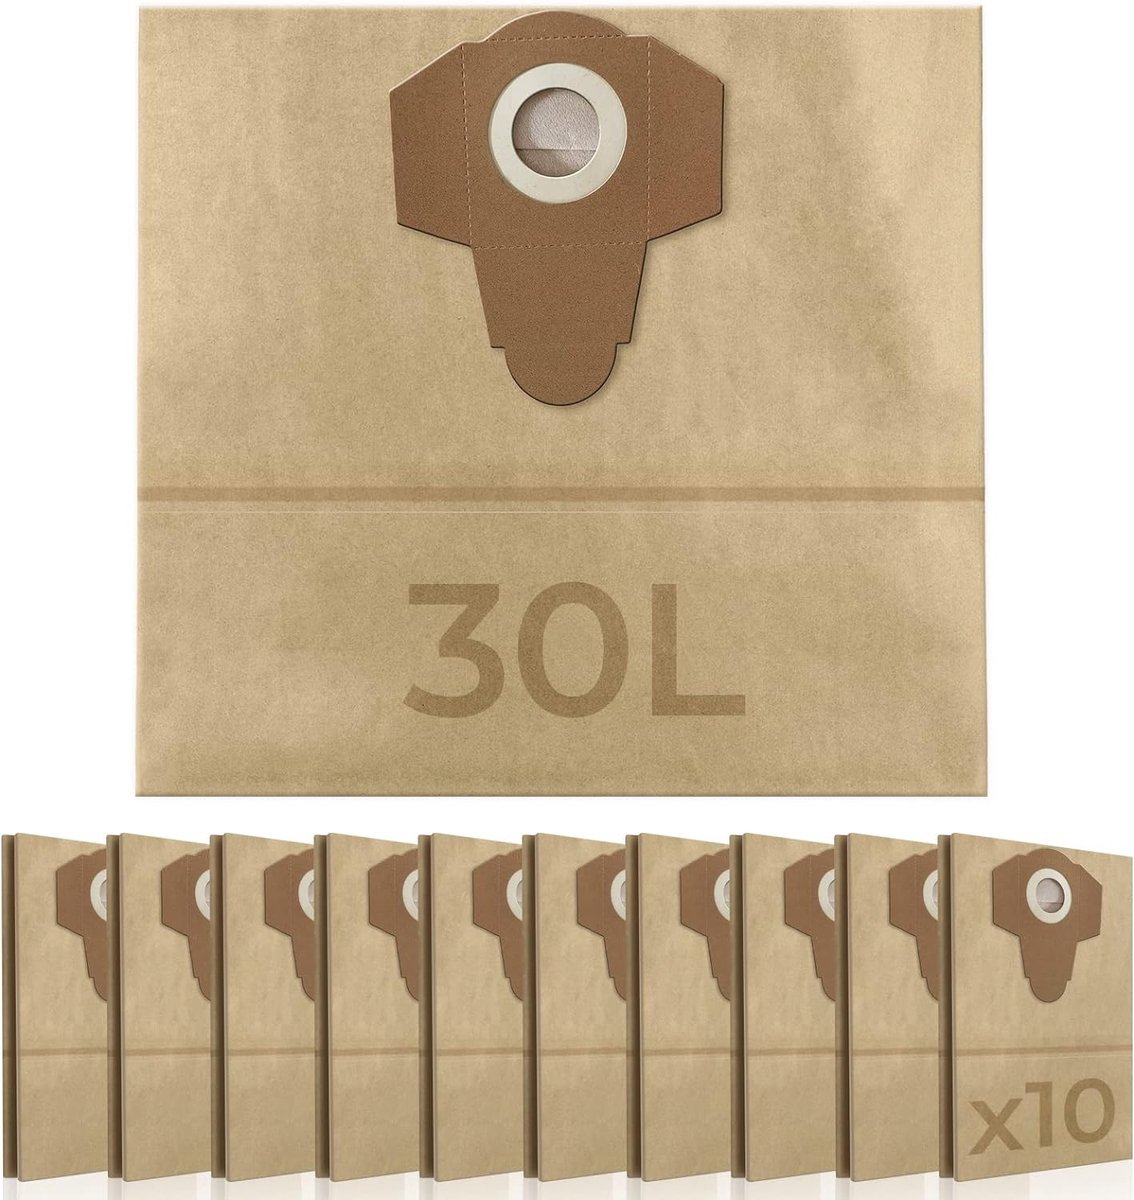 Timbertech - Papieren Stofzuigerzakken - 10 stuks - 30 liter - 64 mm opening - voor industriële stofzuiger